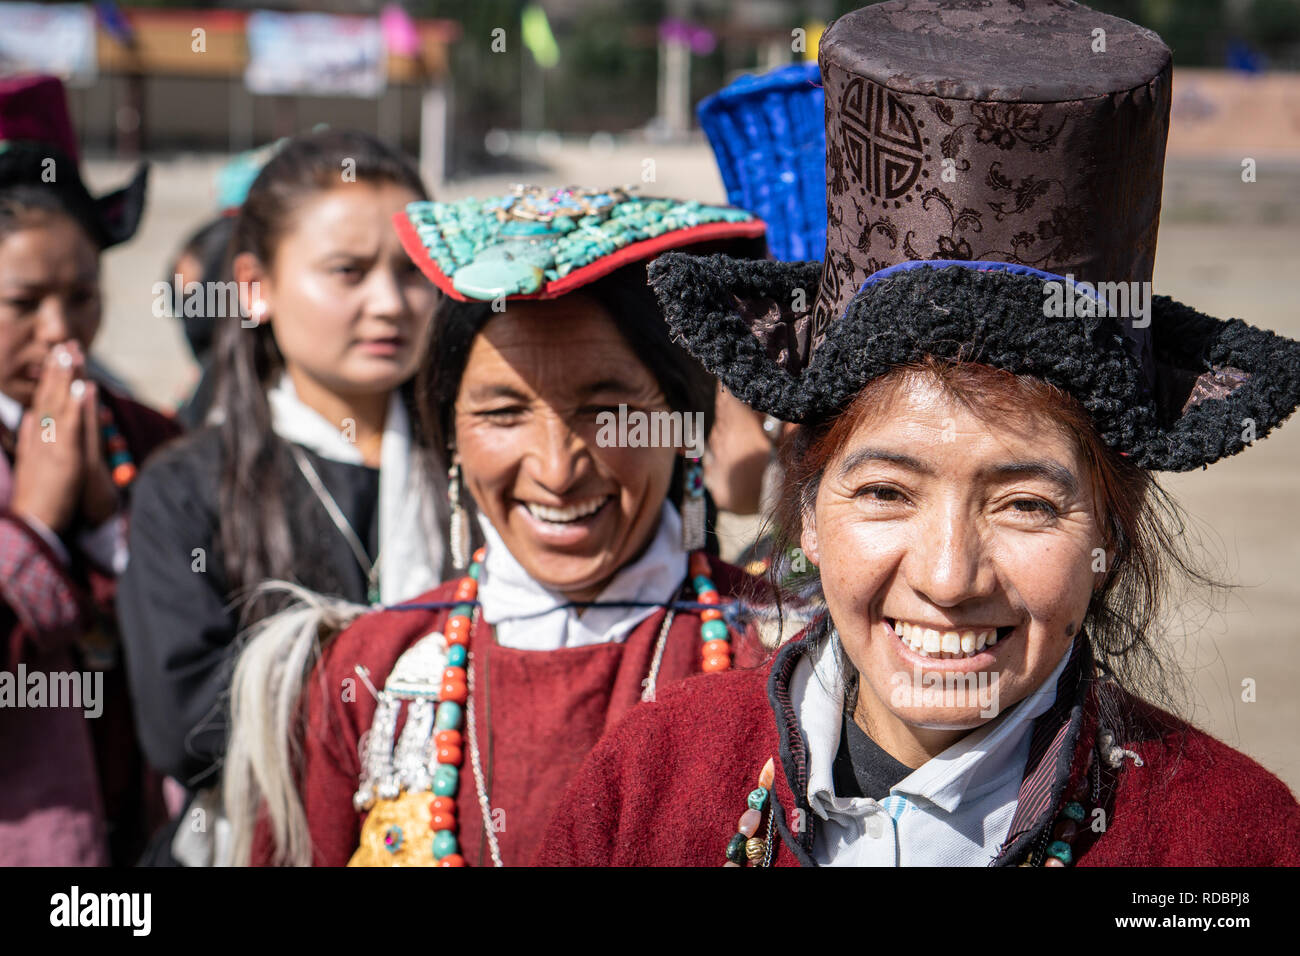 Le Ladakh, Inde - 4 septembre 2018 : Portrait of smiling woman ethnique indienne en vêtements traditionnels sur festival à Ladakh. Rédaction d'illustration. Banque D'Images